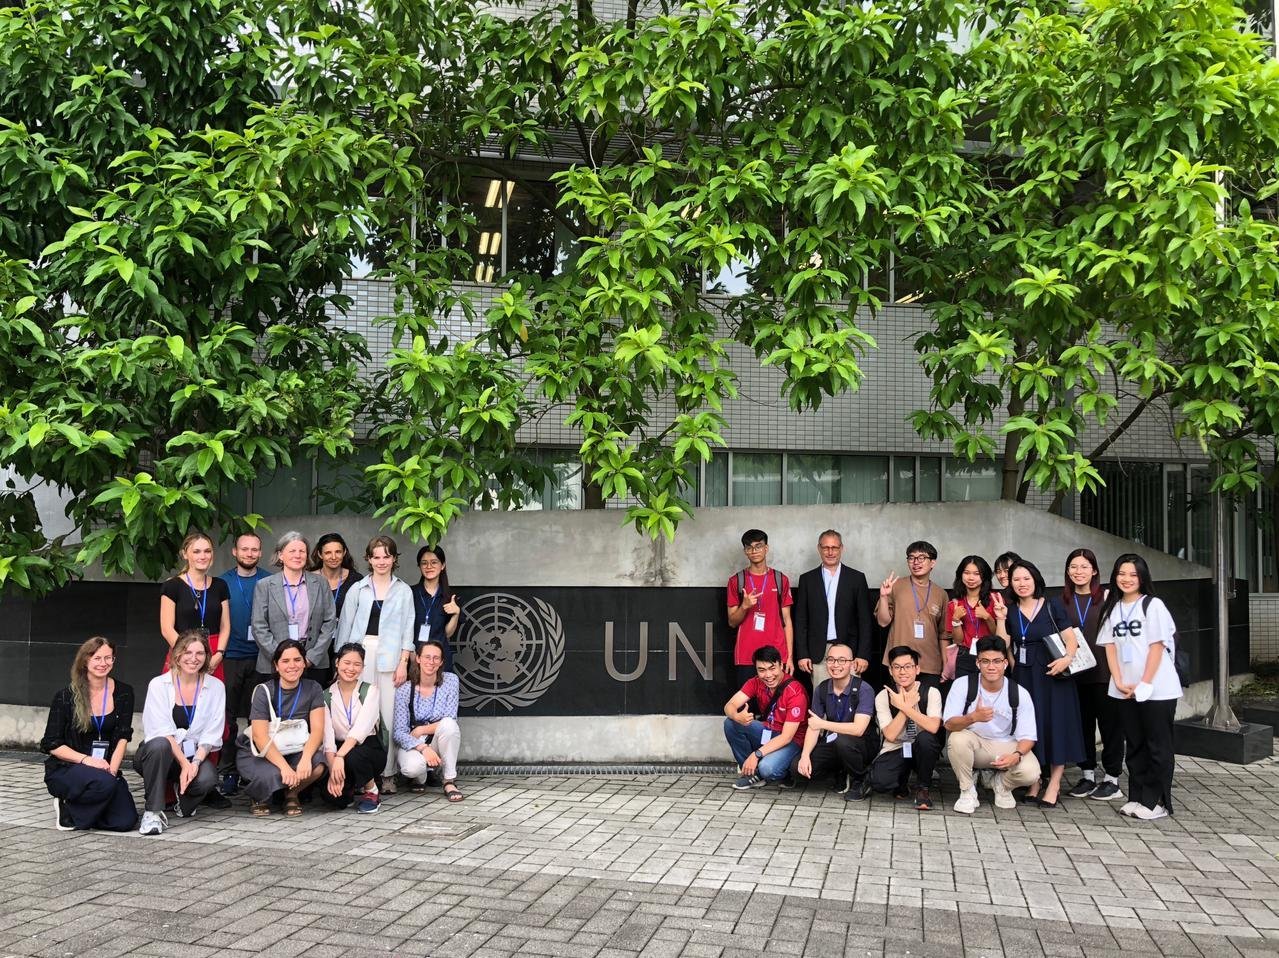 [Translate to English:] Studierender beider Länder auf einen Gruppenfoto vor dem UN-Gebäude in Hanoi